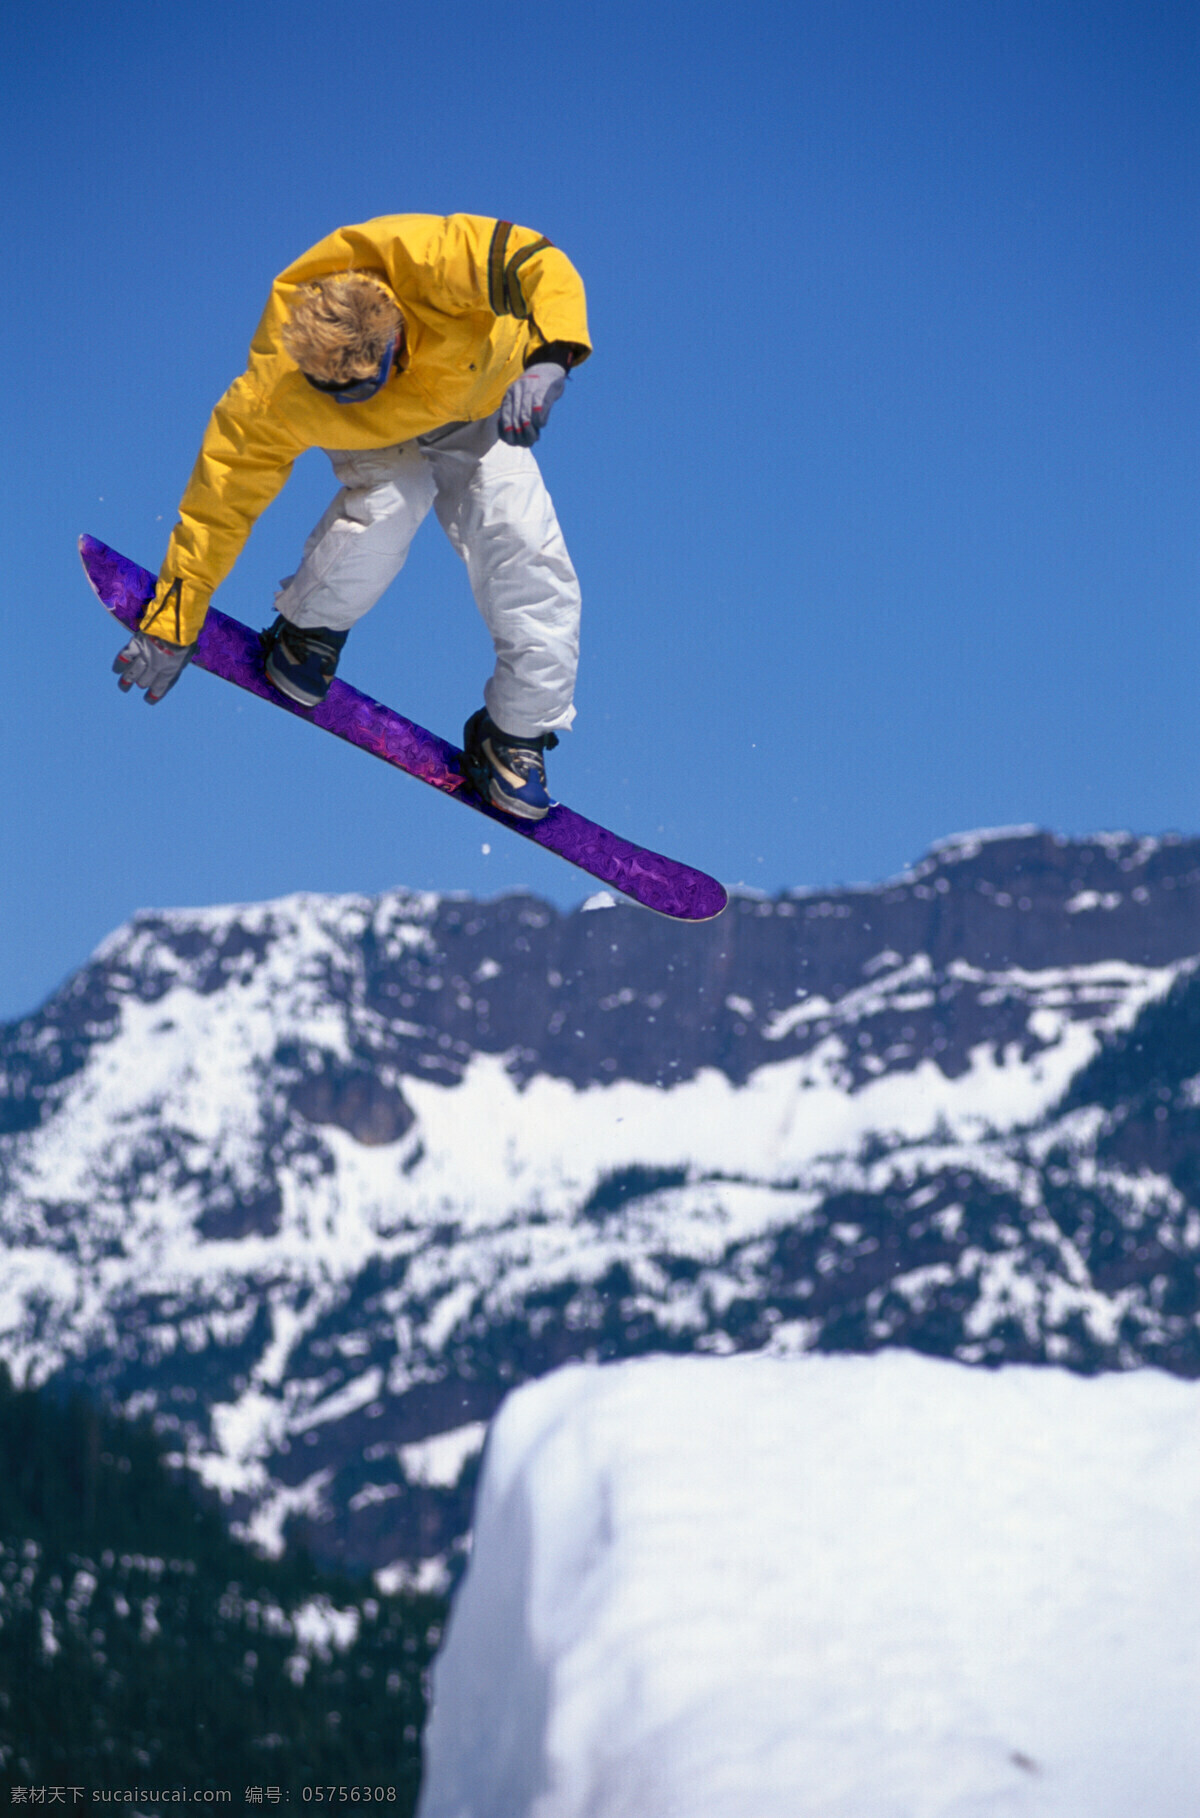 腾飞起来的人 美丽 自然 雪地 冬季 运动 人物 滑雪 腾空 腾飞 飞越 转身 体育运动 生活百科 蓝色